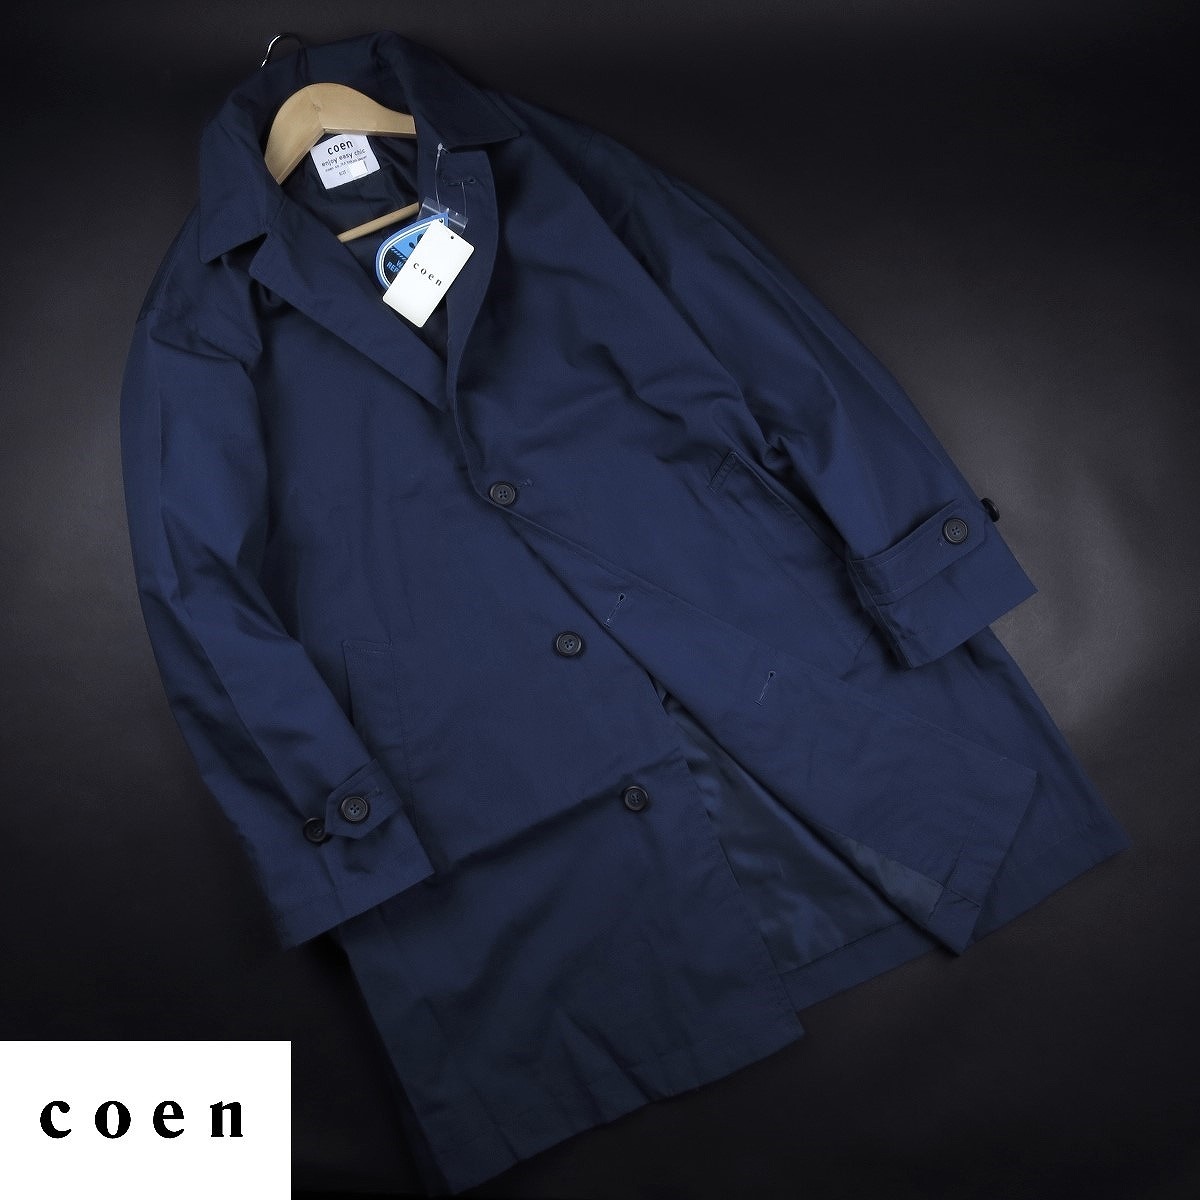  новый товар * United Arrows /ko-en/coen/ отложной воротник весеннее пальто 137/79 темно-синий /[M]